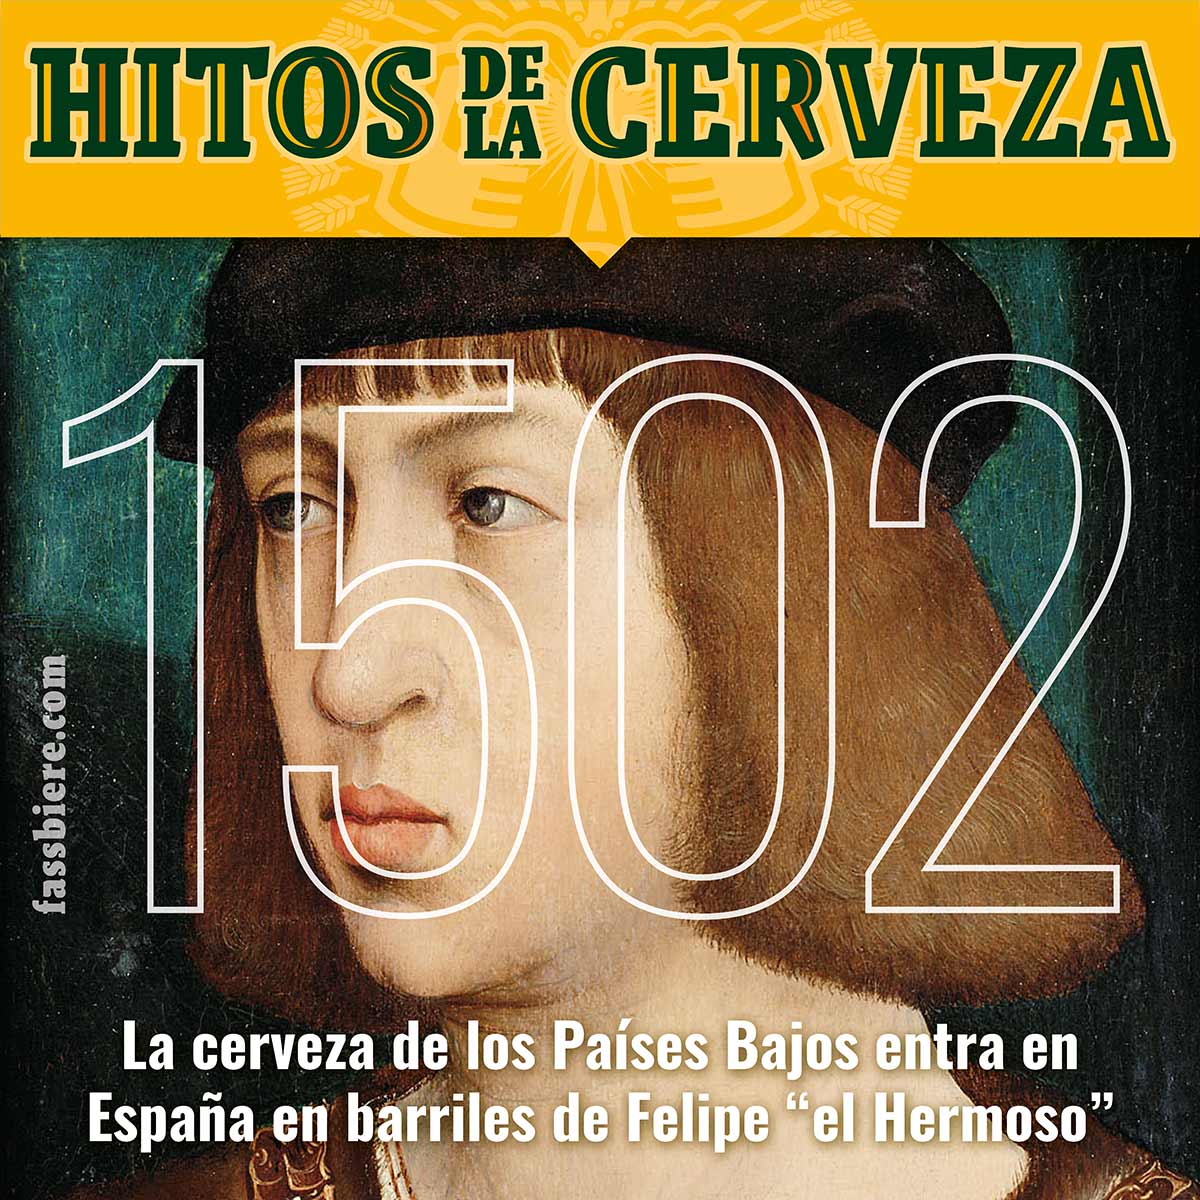 Hitos de la Cerveza en Fassbiere: En 1502 Felipe “el Hermoso” introduce en España la cerveza de Flandes cuando viene con su esposa, Juana “la Loca” para ser jurados Príncipes de Asturias.